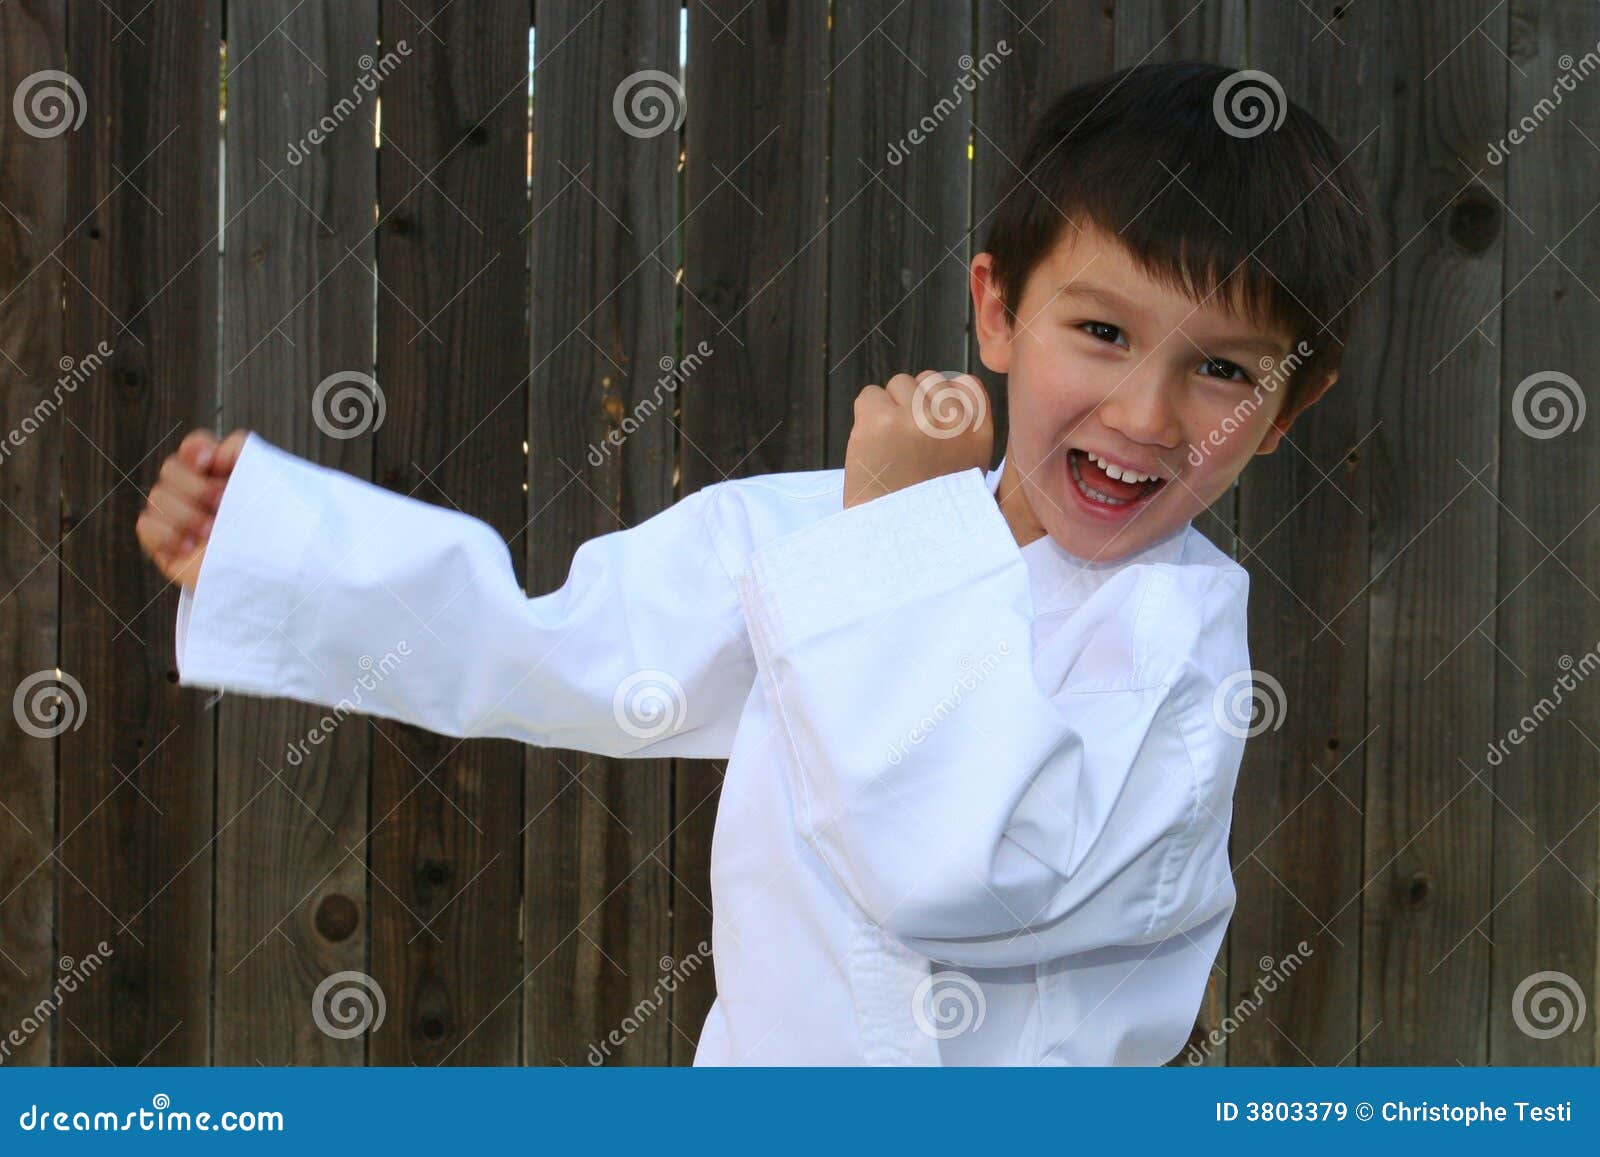 kid practicing karate